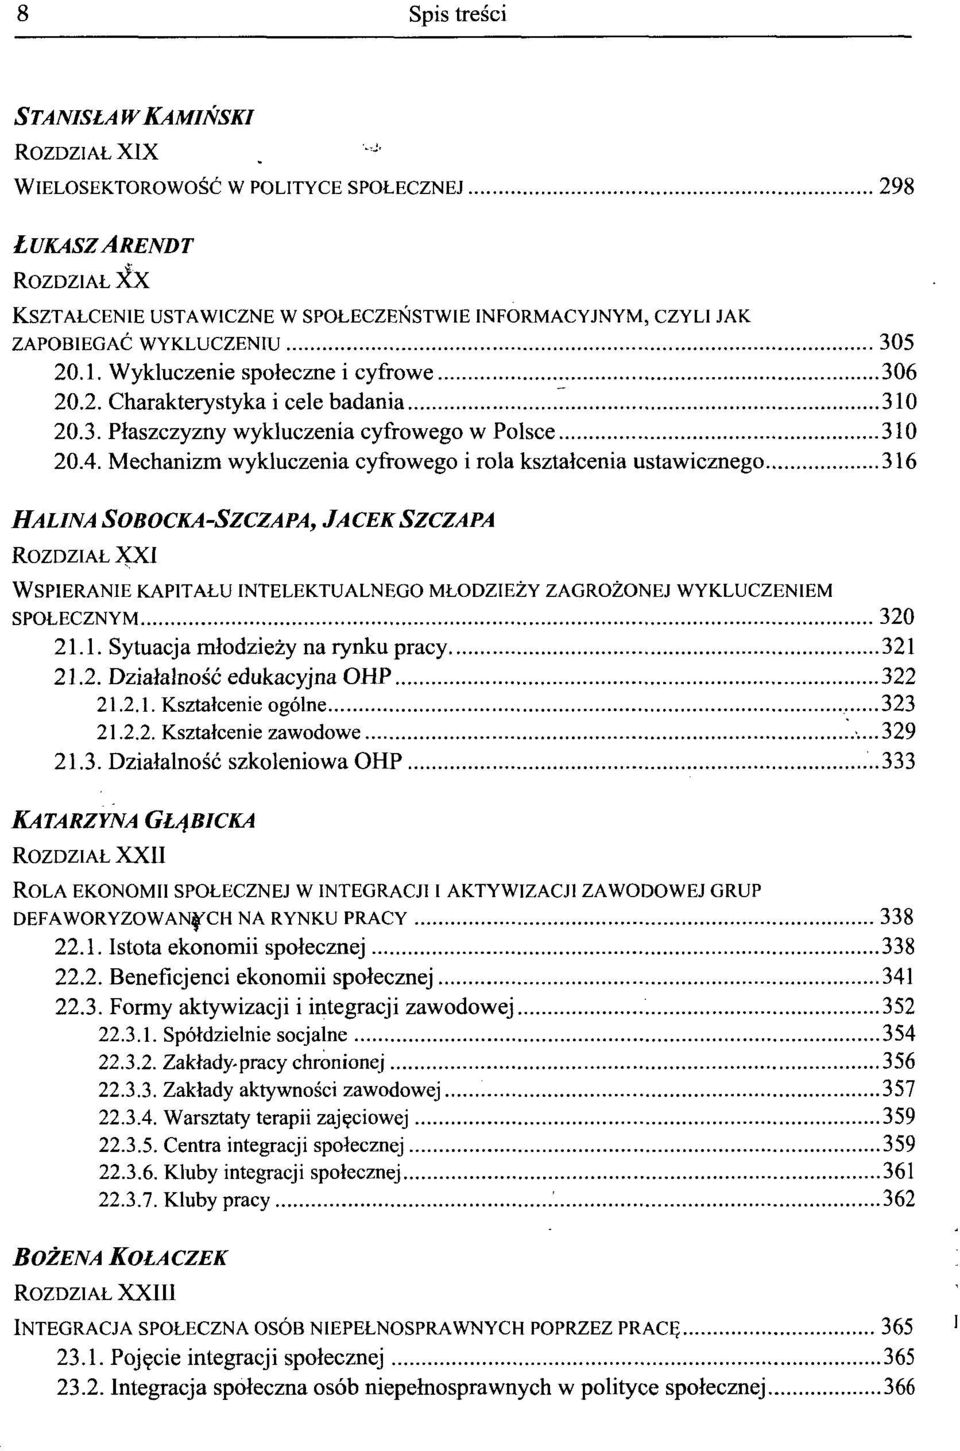 Wykluczenie spoleczne i cyfrowe 306 20.2. Charakterystyka i cele badania 310 20.3. Plaszczyzny wykluczenia cyfrowego w Polsce 310 20.4.